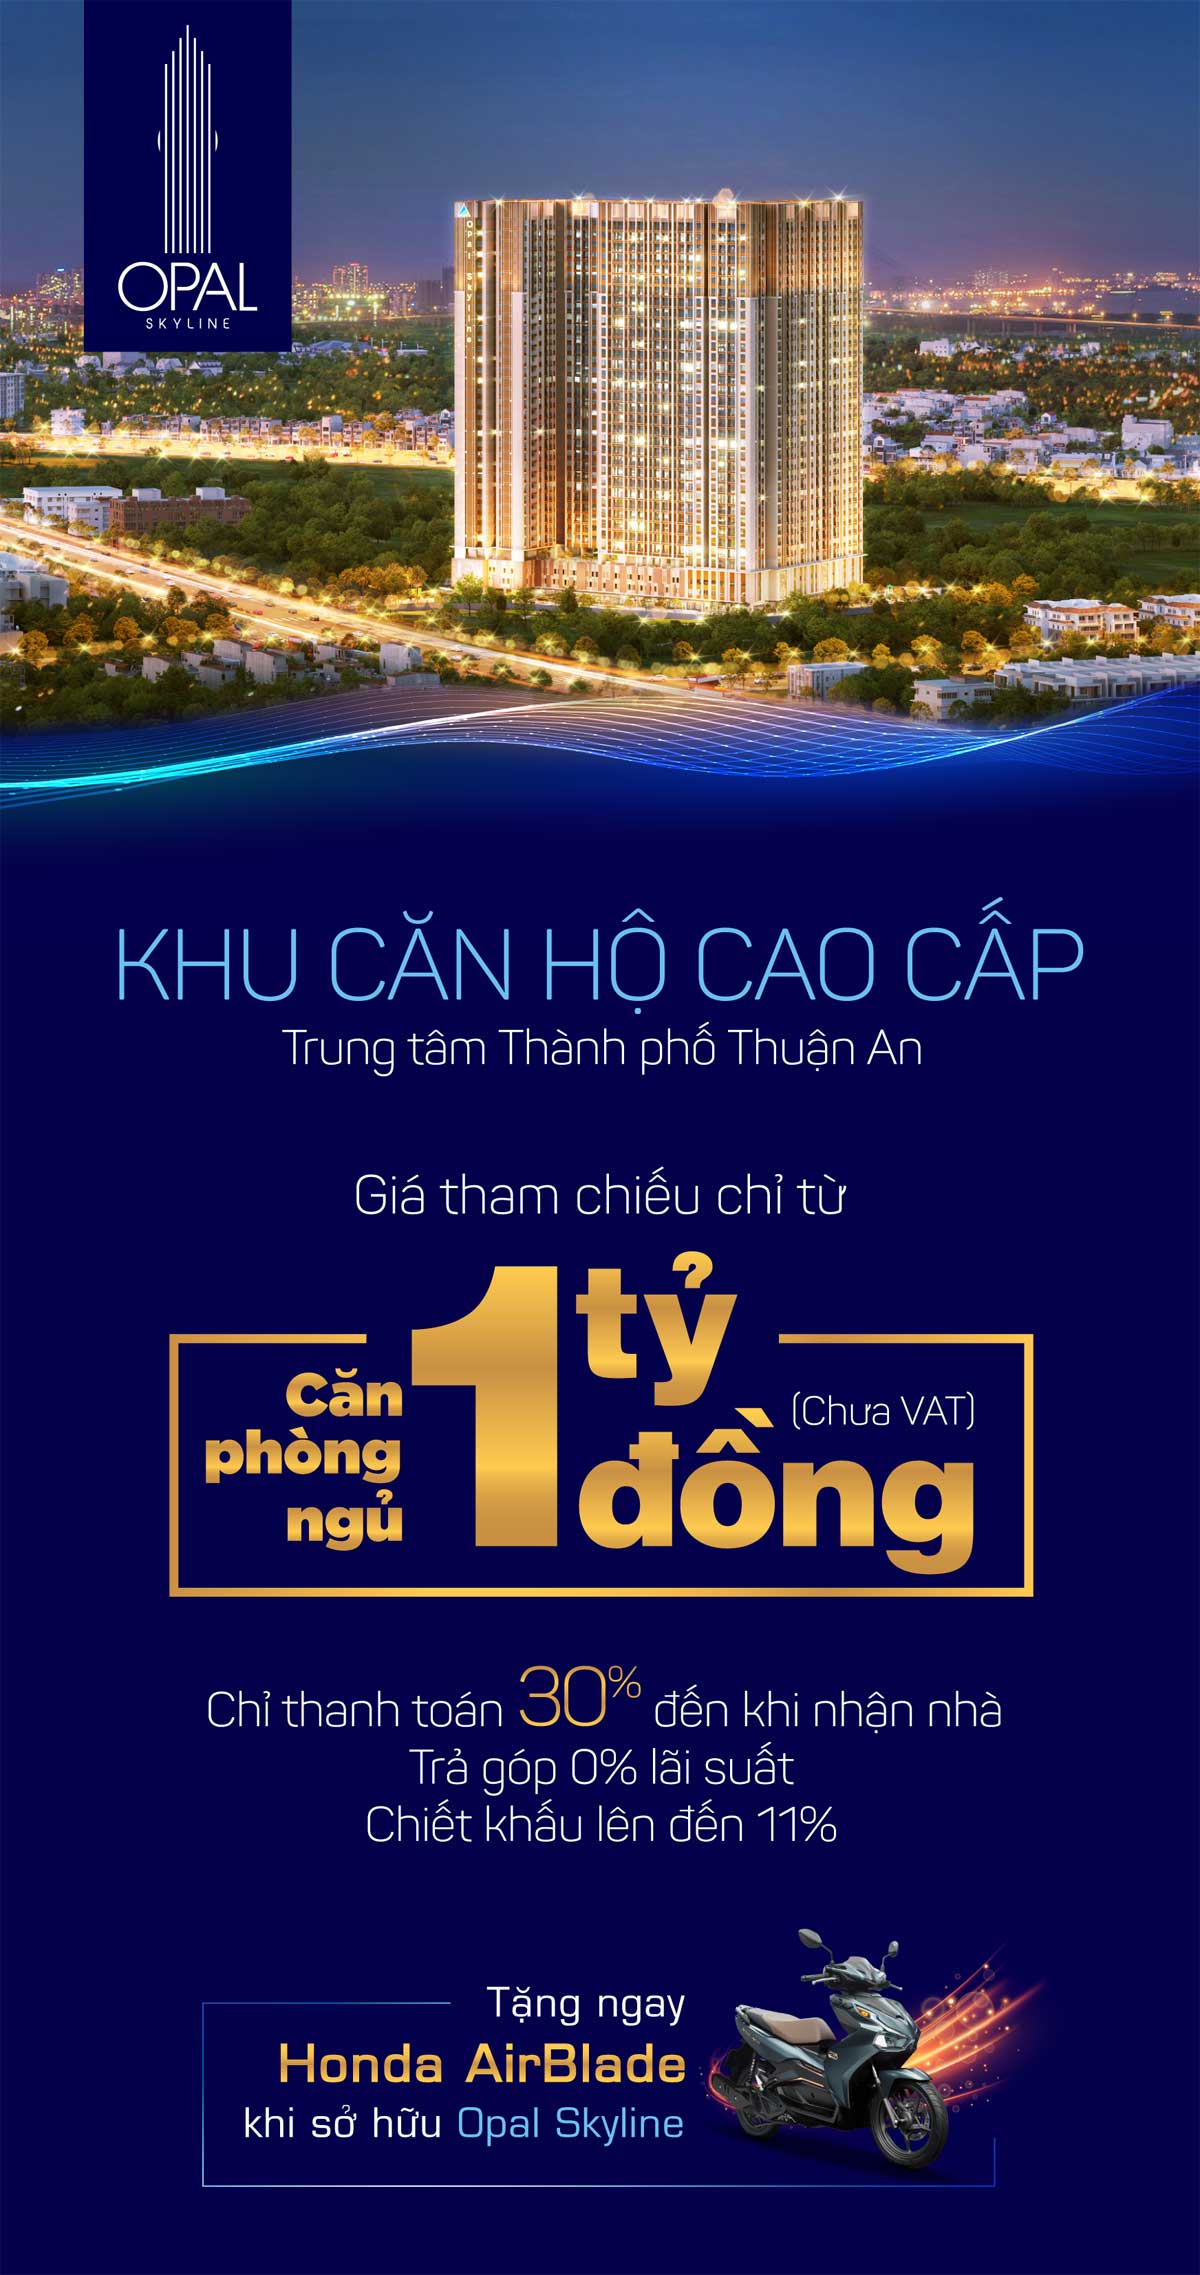 chinh sach ban hang can ho opal skyline - OPAL SKYLINE THUẬN AN BÌNH DƯƠNG